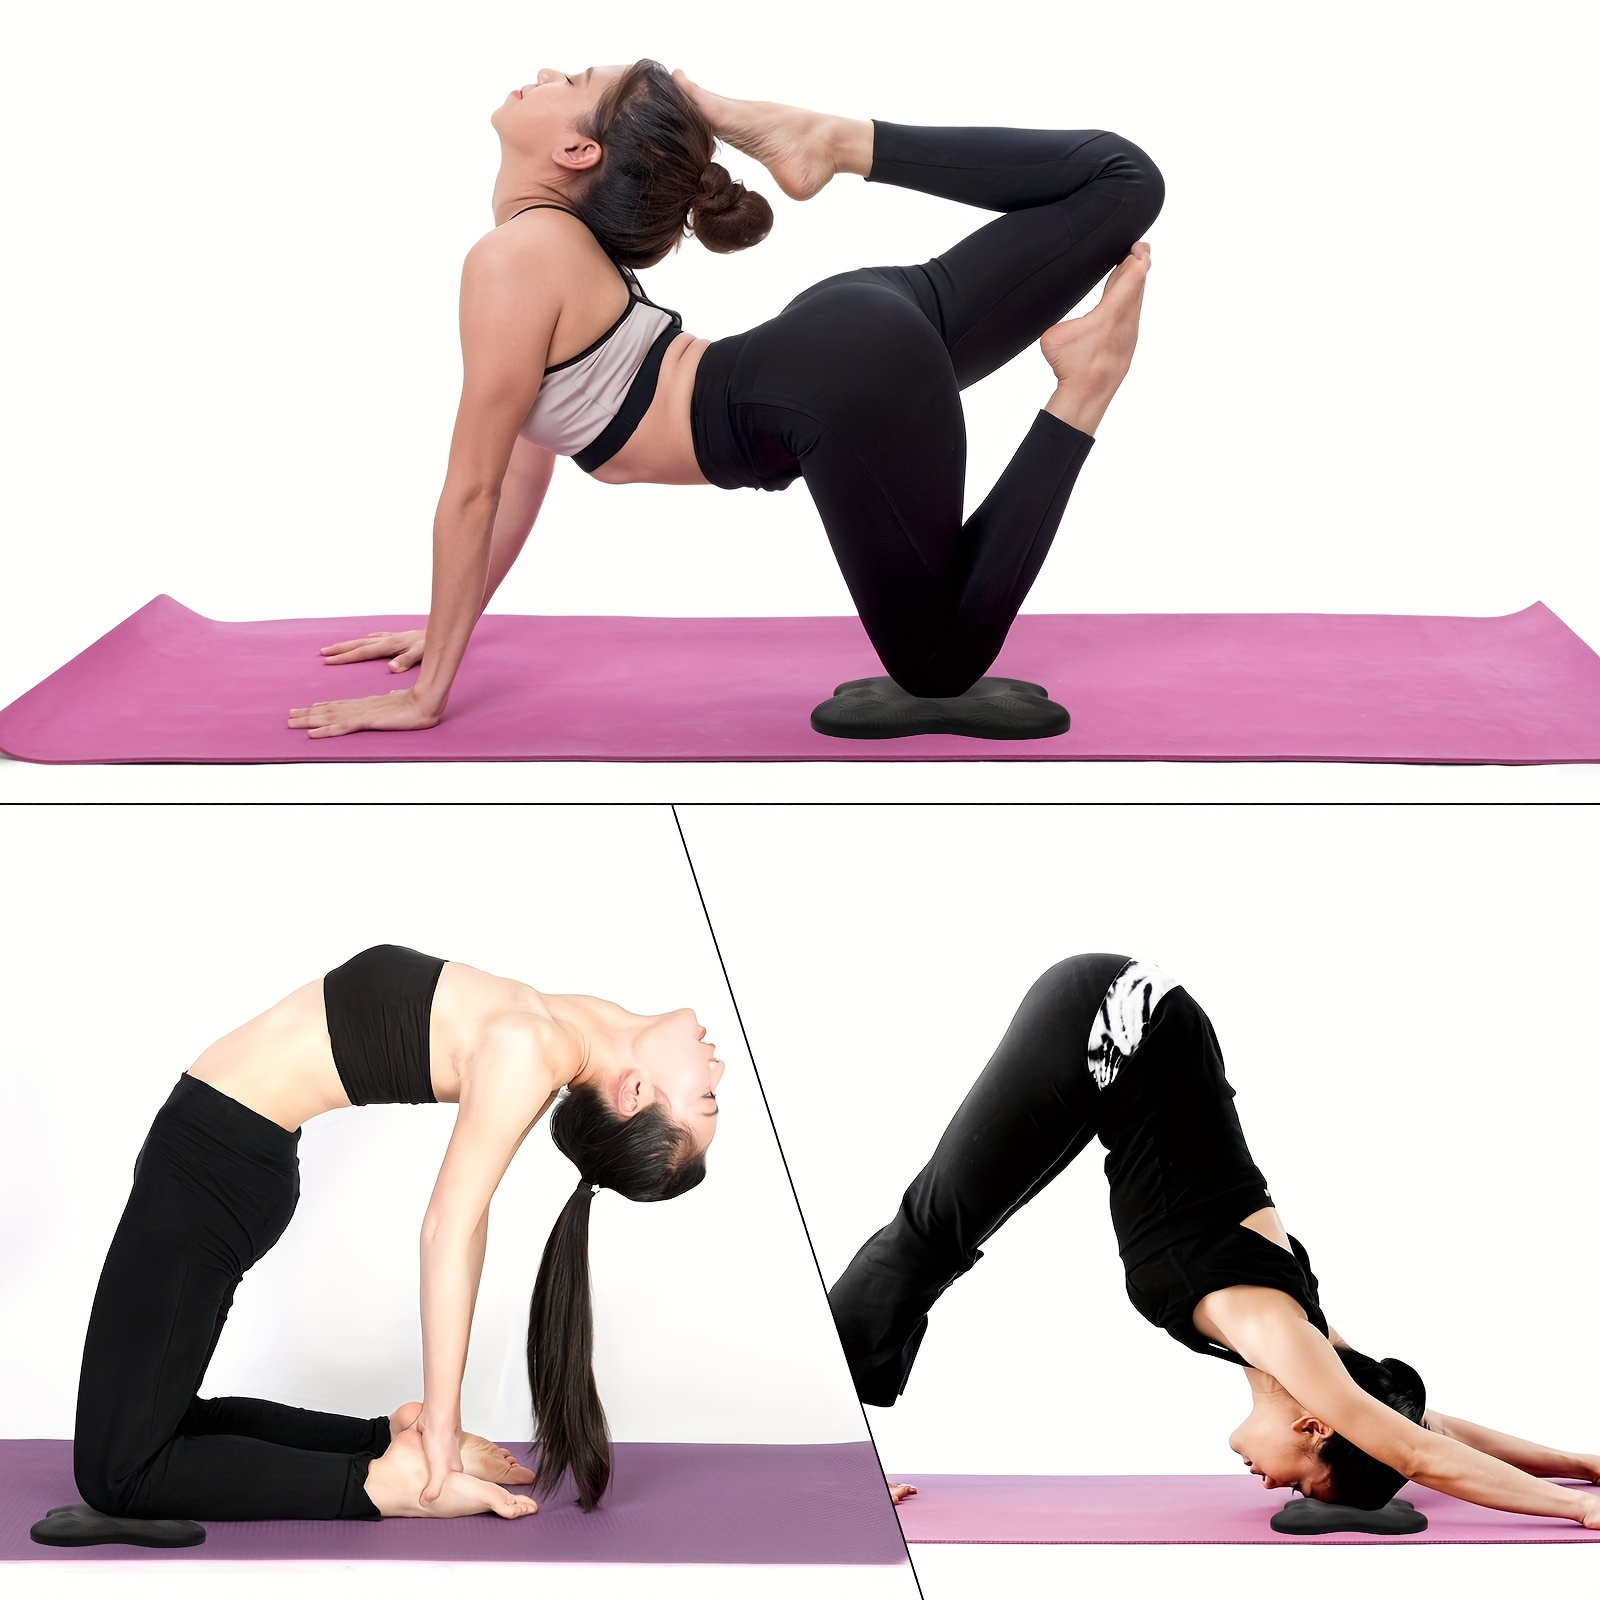 Genouillères de Yoga 1 paquet, coussin de genou de Yoga coussinets  d'exercice épais pour genoux coudes poignet mains tête mousse Pilates  genouillère